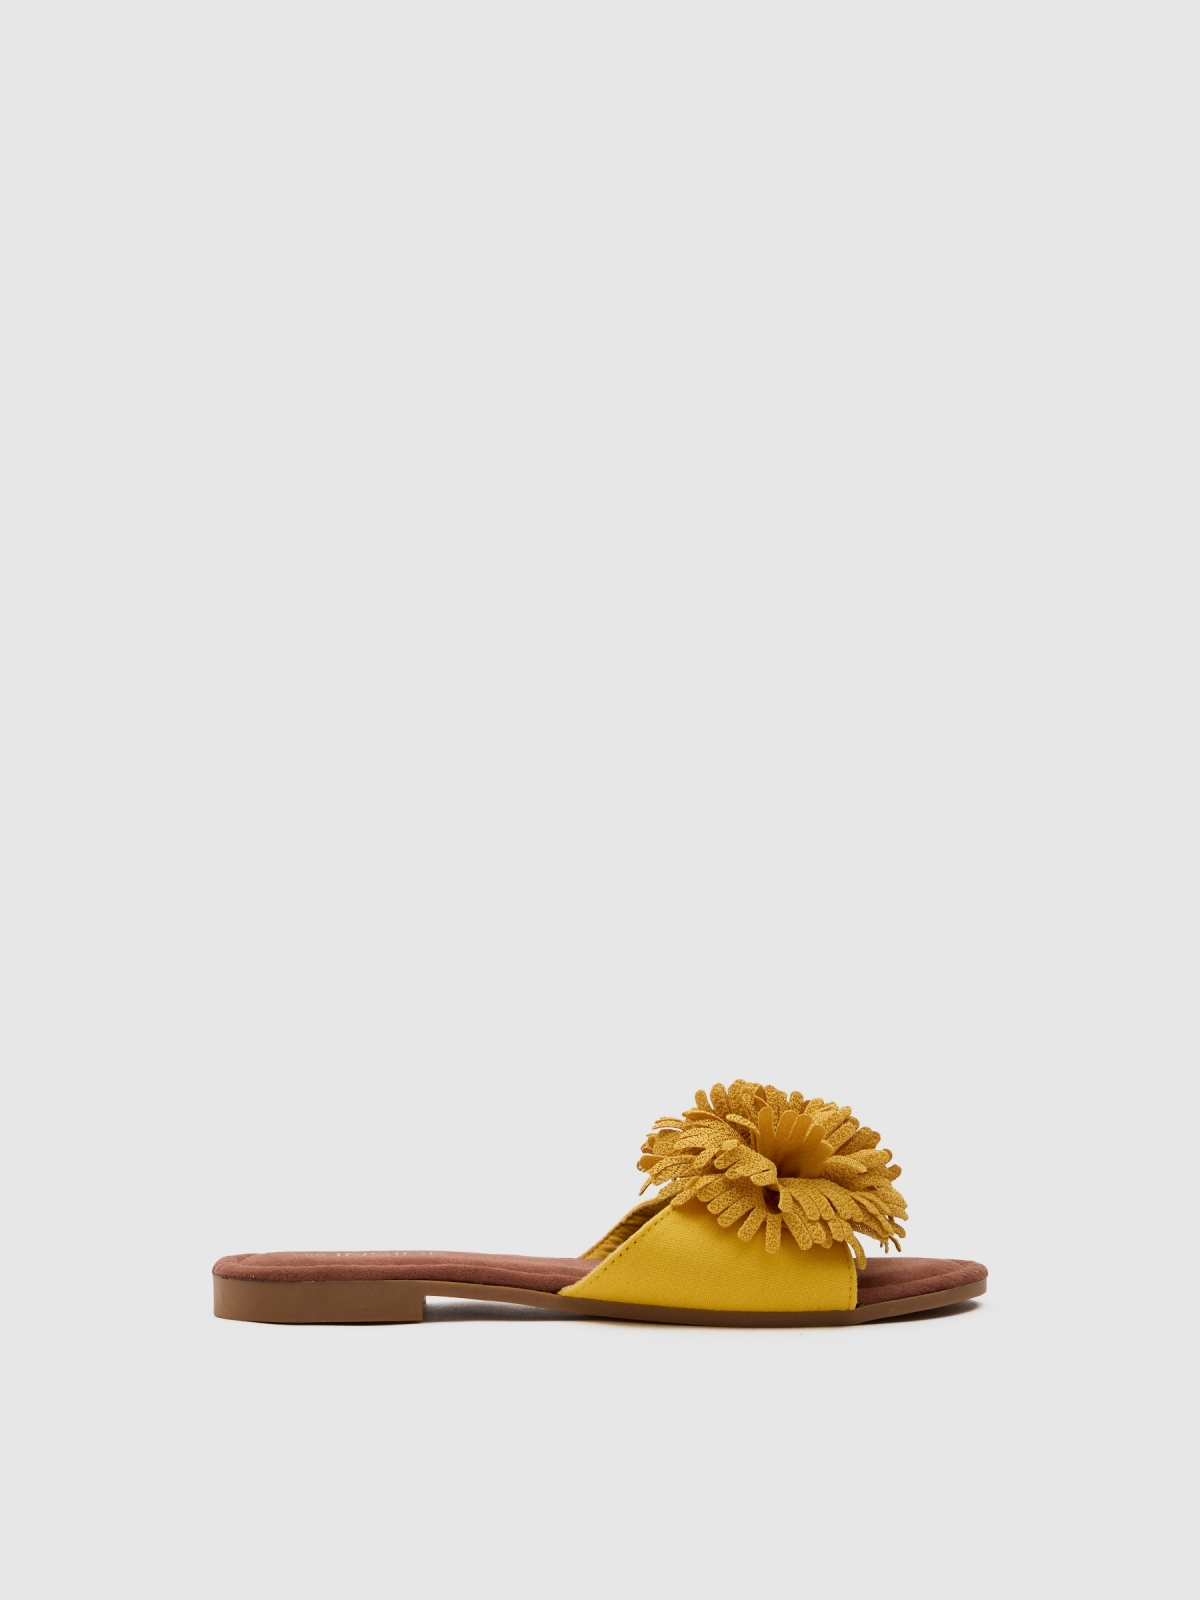 Floral sandal